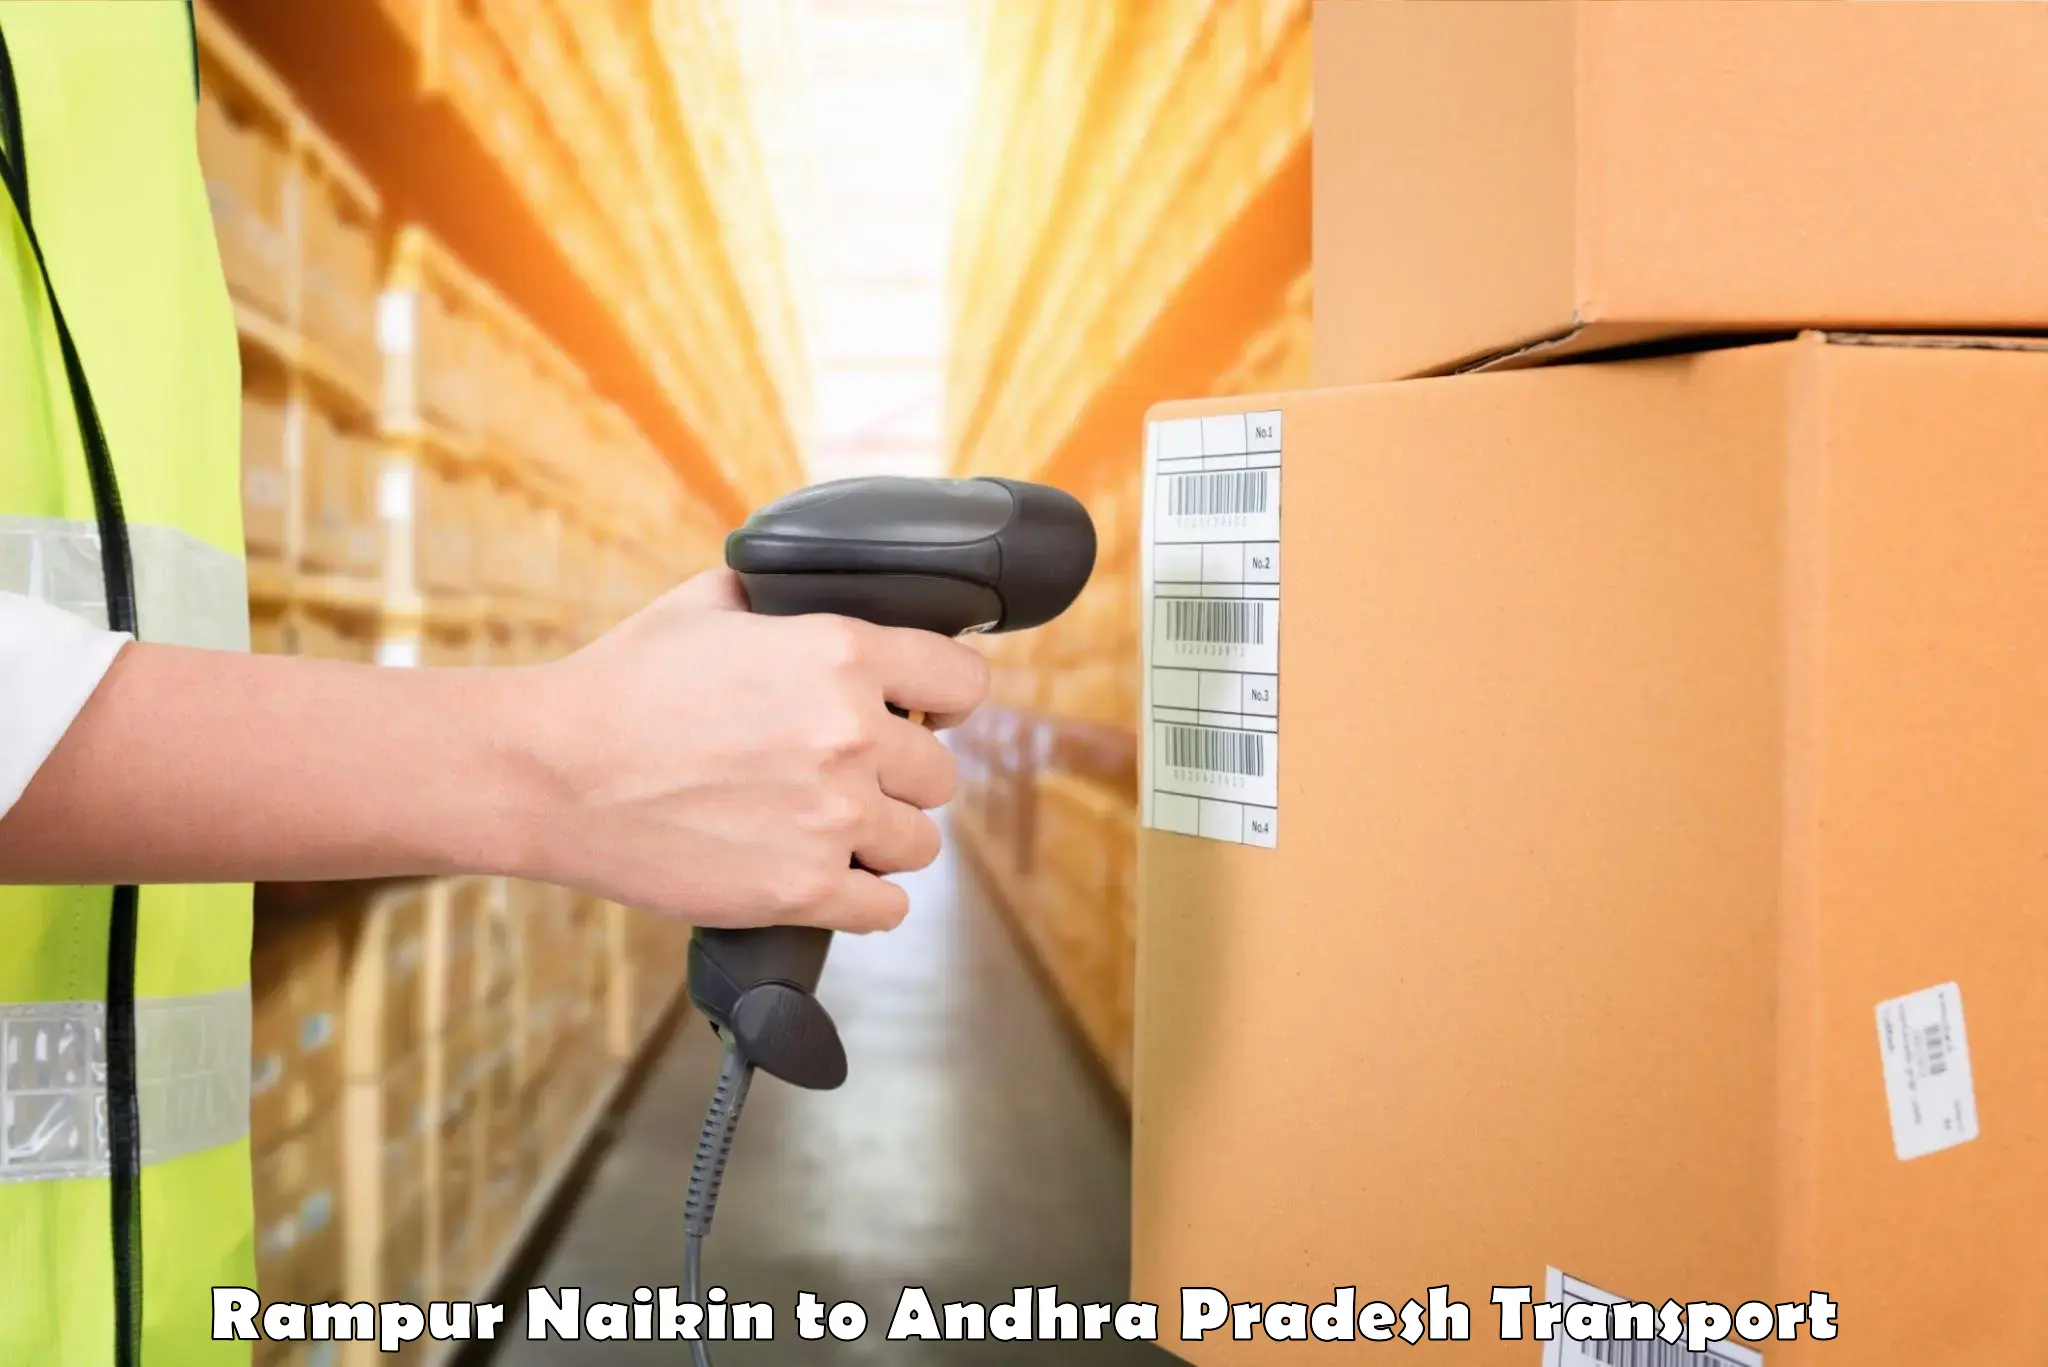 Transport in sharing Rampur Naikin to Guntur